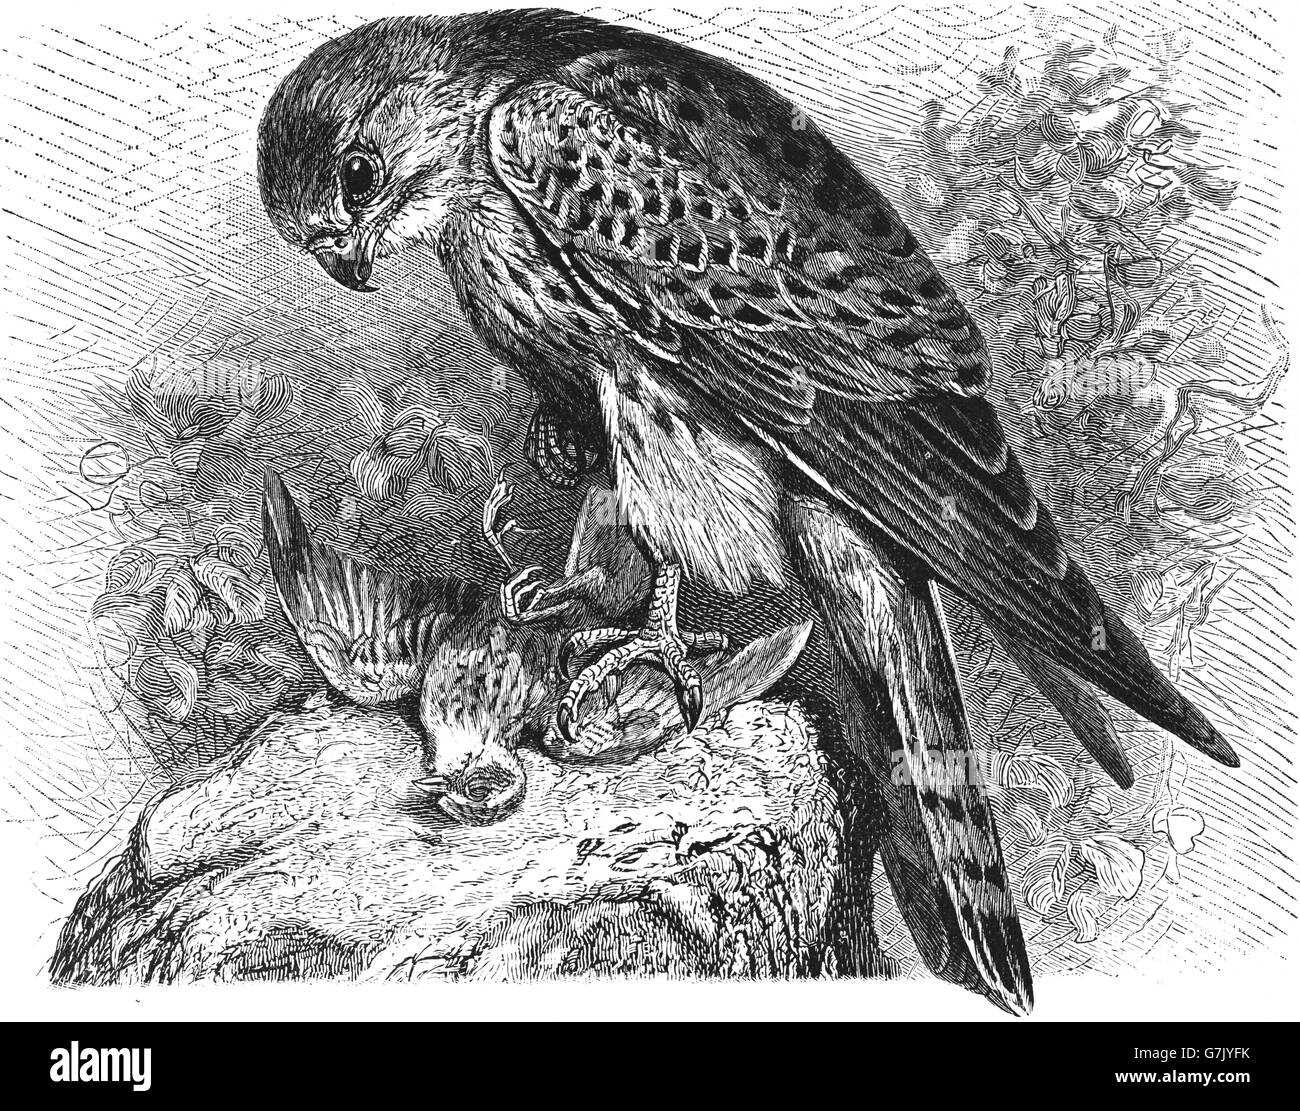 Faucon crécerelle, Falco tinnunculus, illustration de livre daté 1904 Banque D'Images